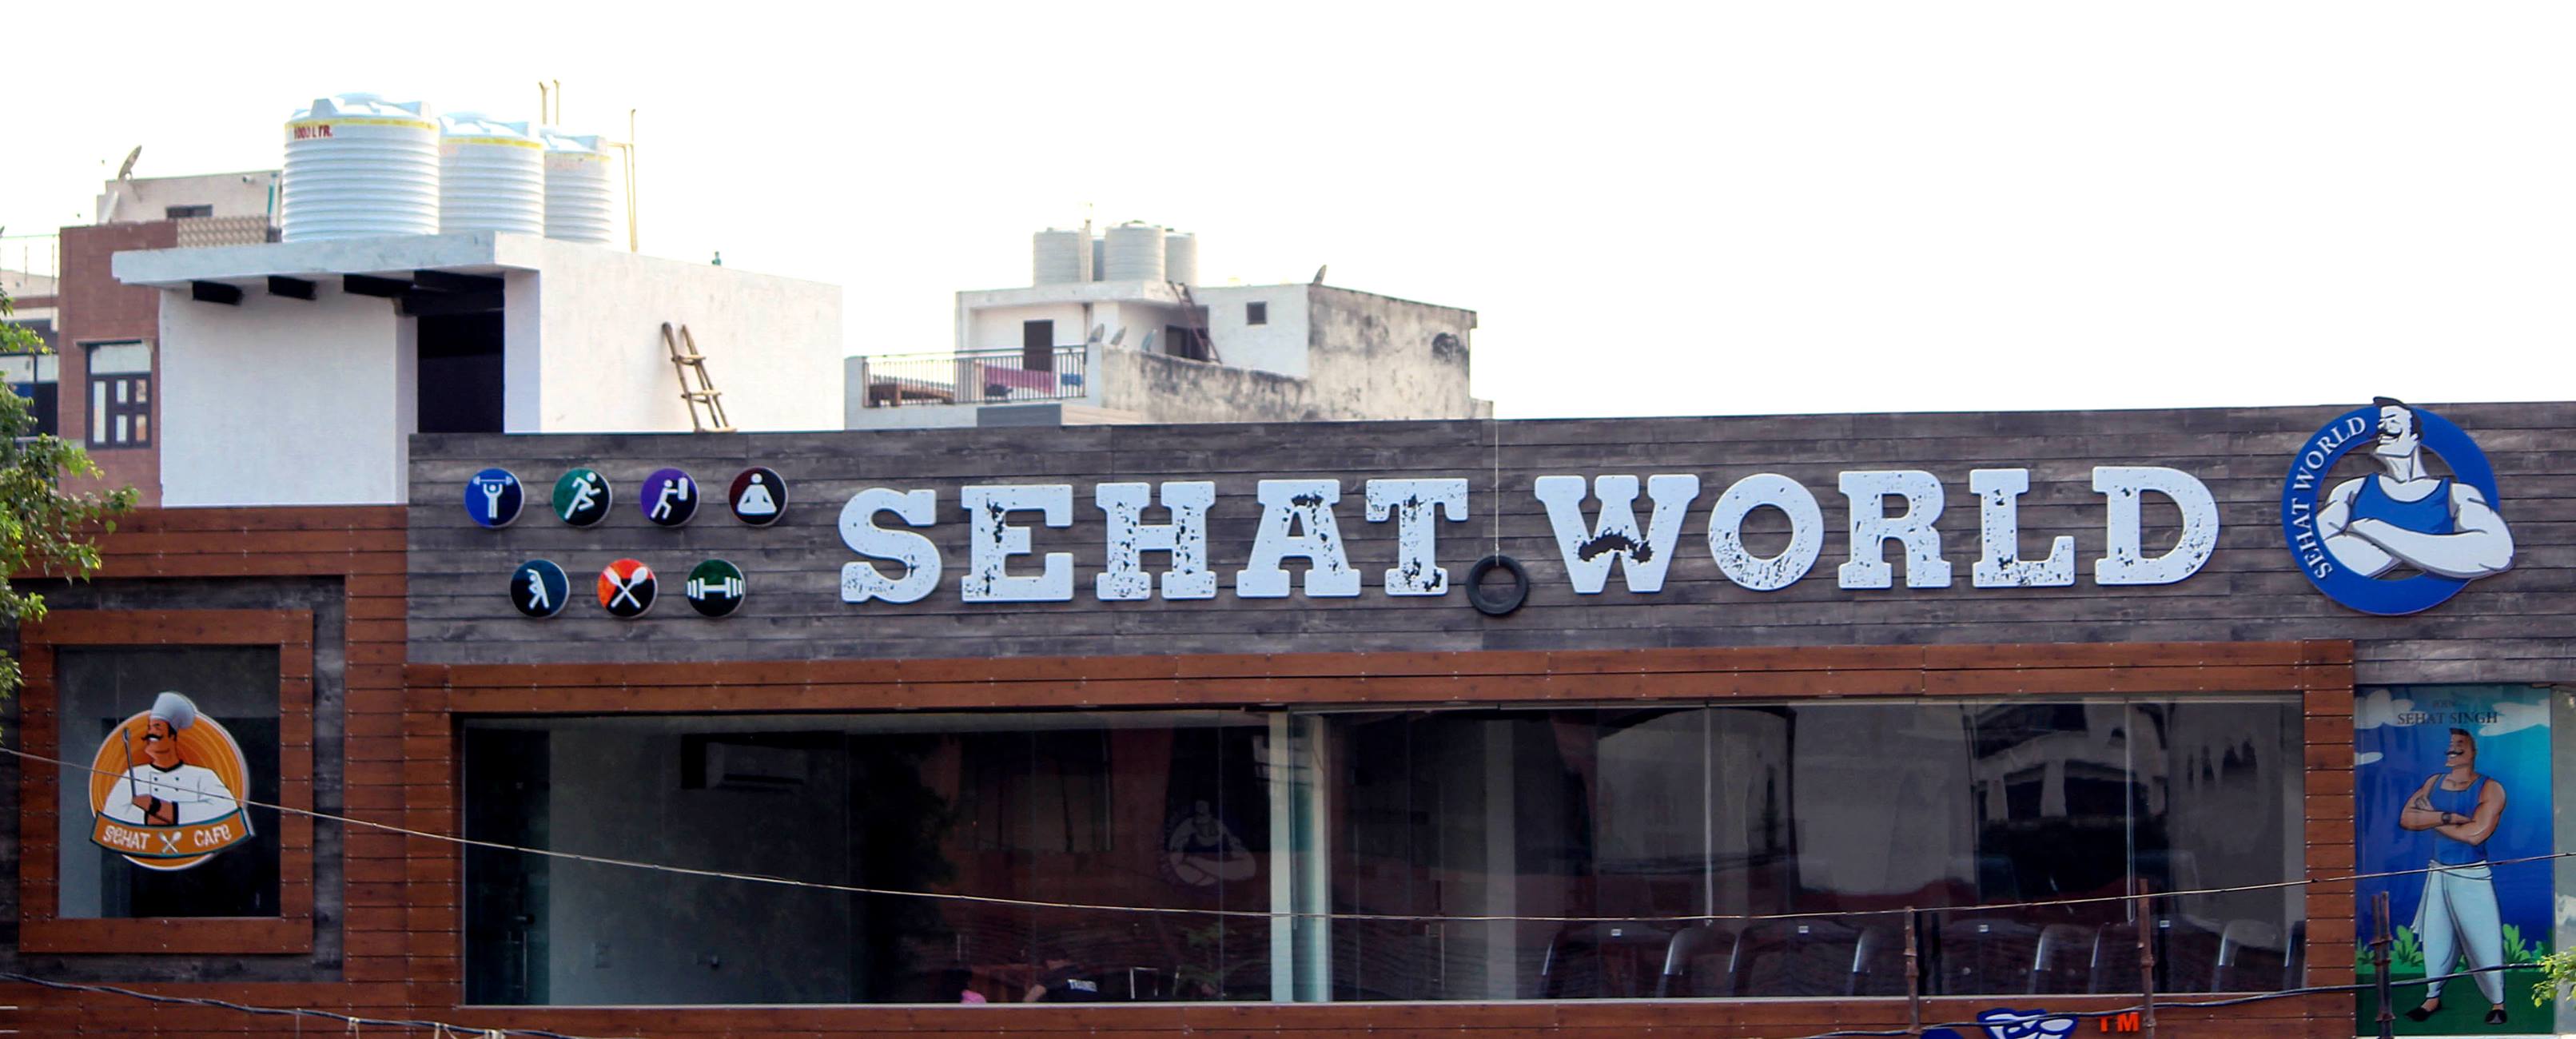 Delhi-Dwarka-Sehat-world_826_ODI2_MzgxNQ